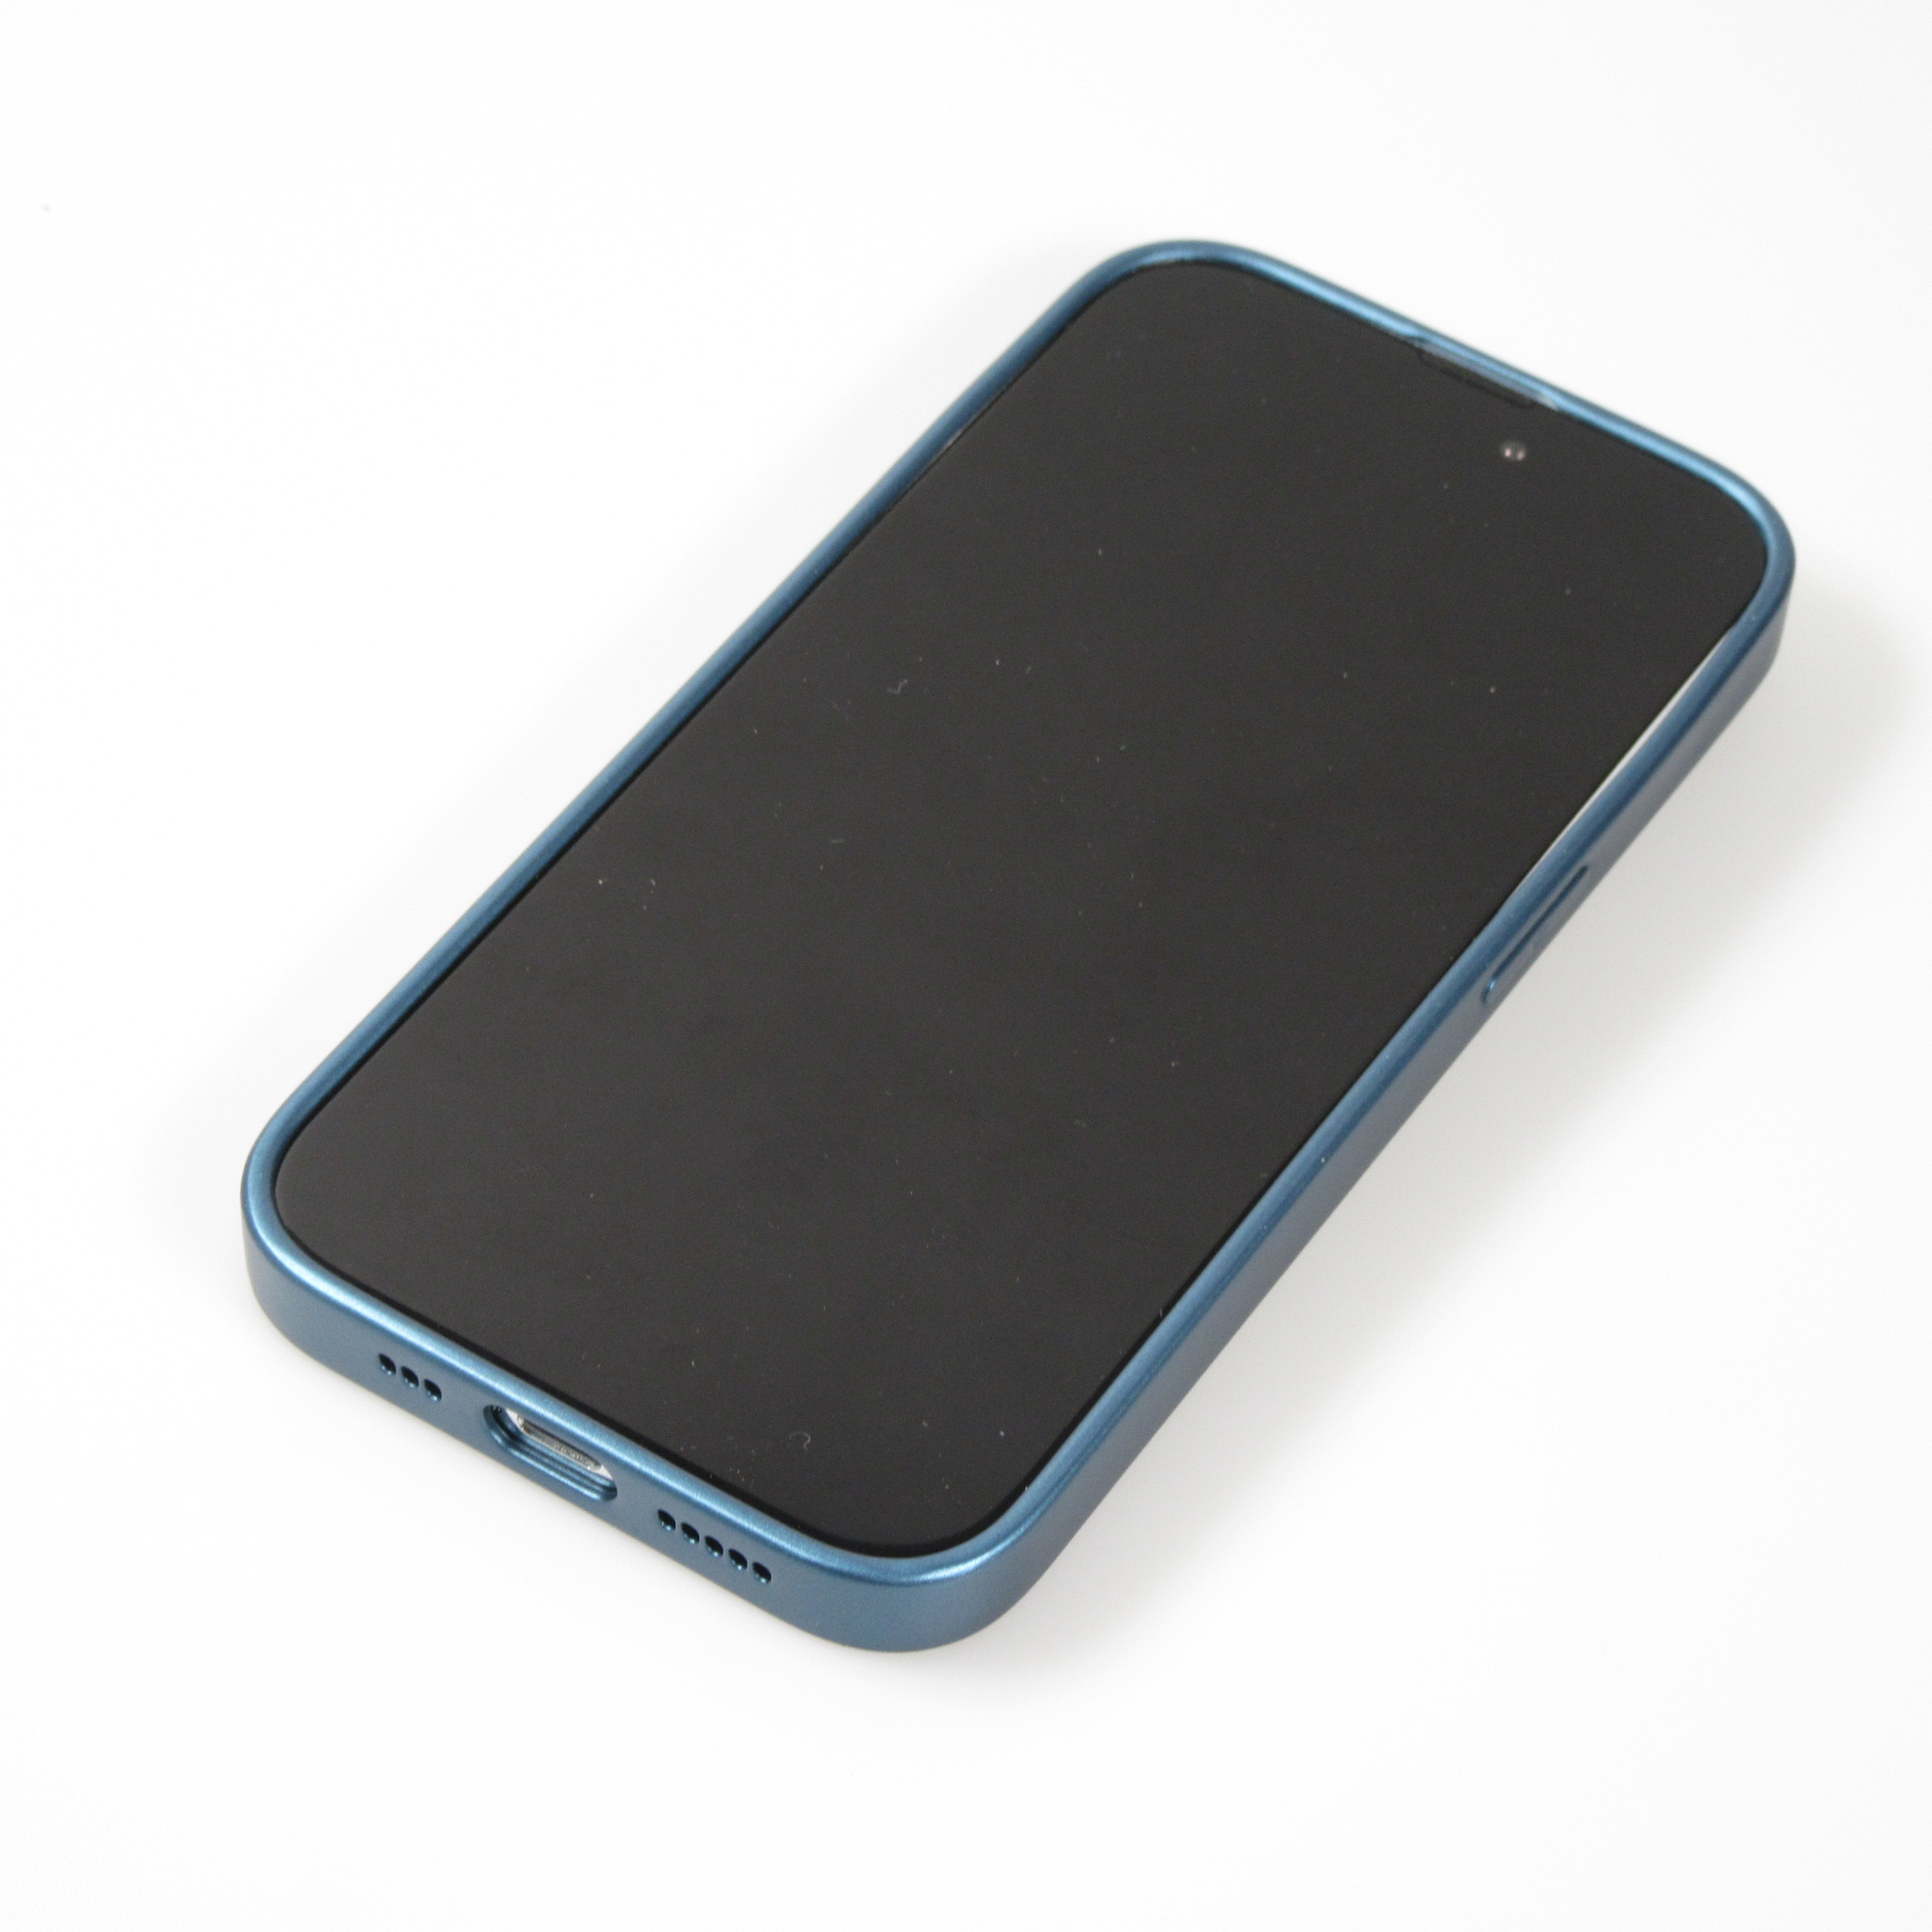 Coque silicone+protection caméra bleu iPhone 11Pro Max